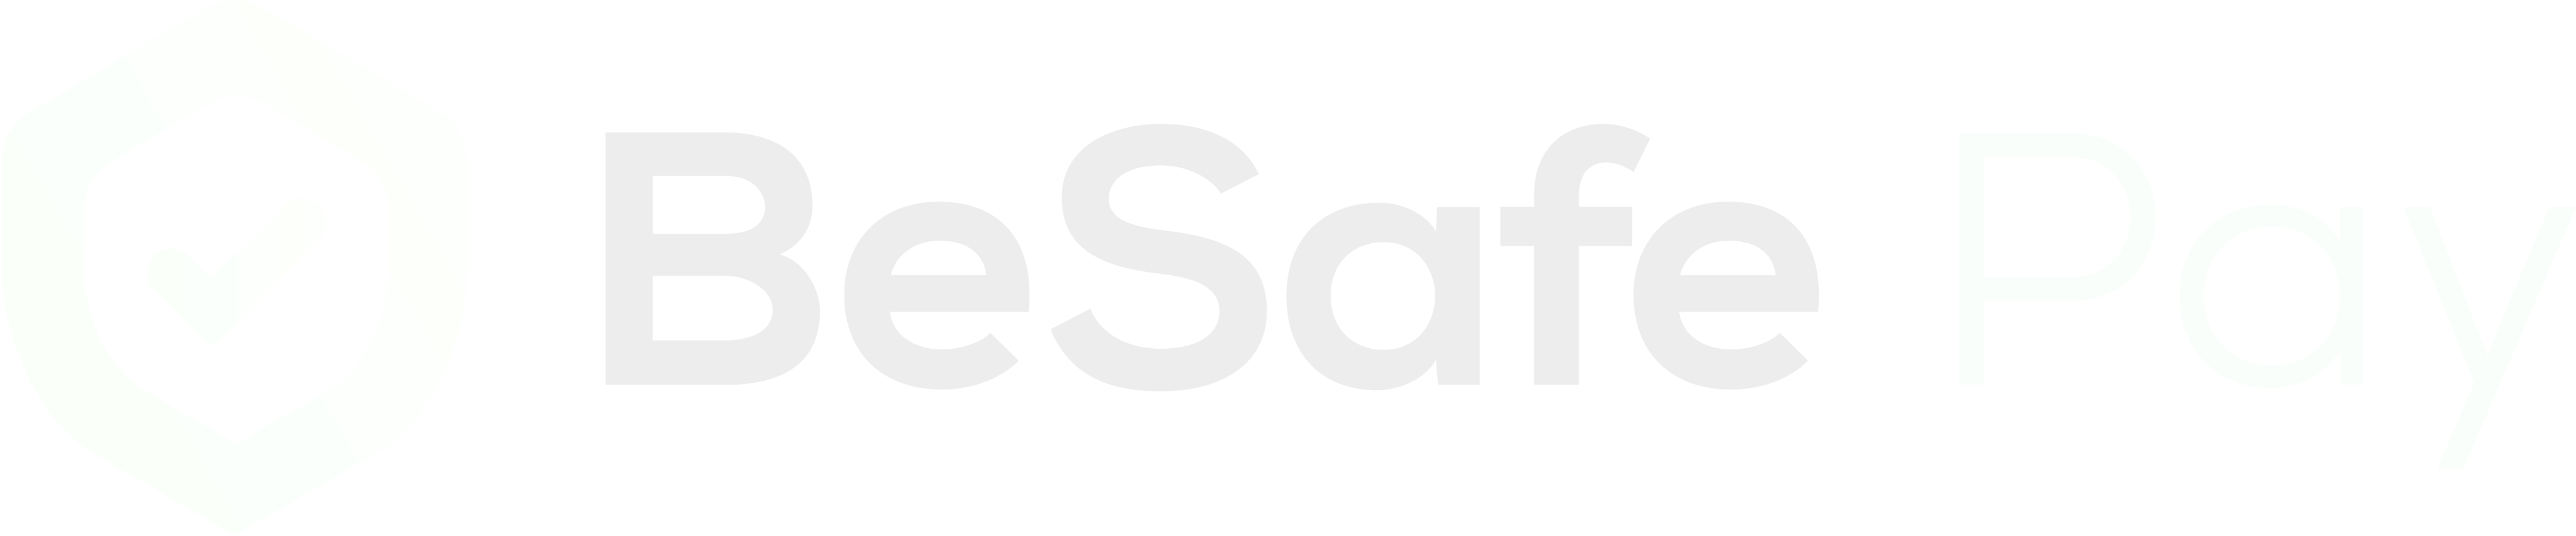 BeSafe Pay logo